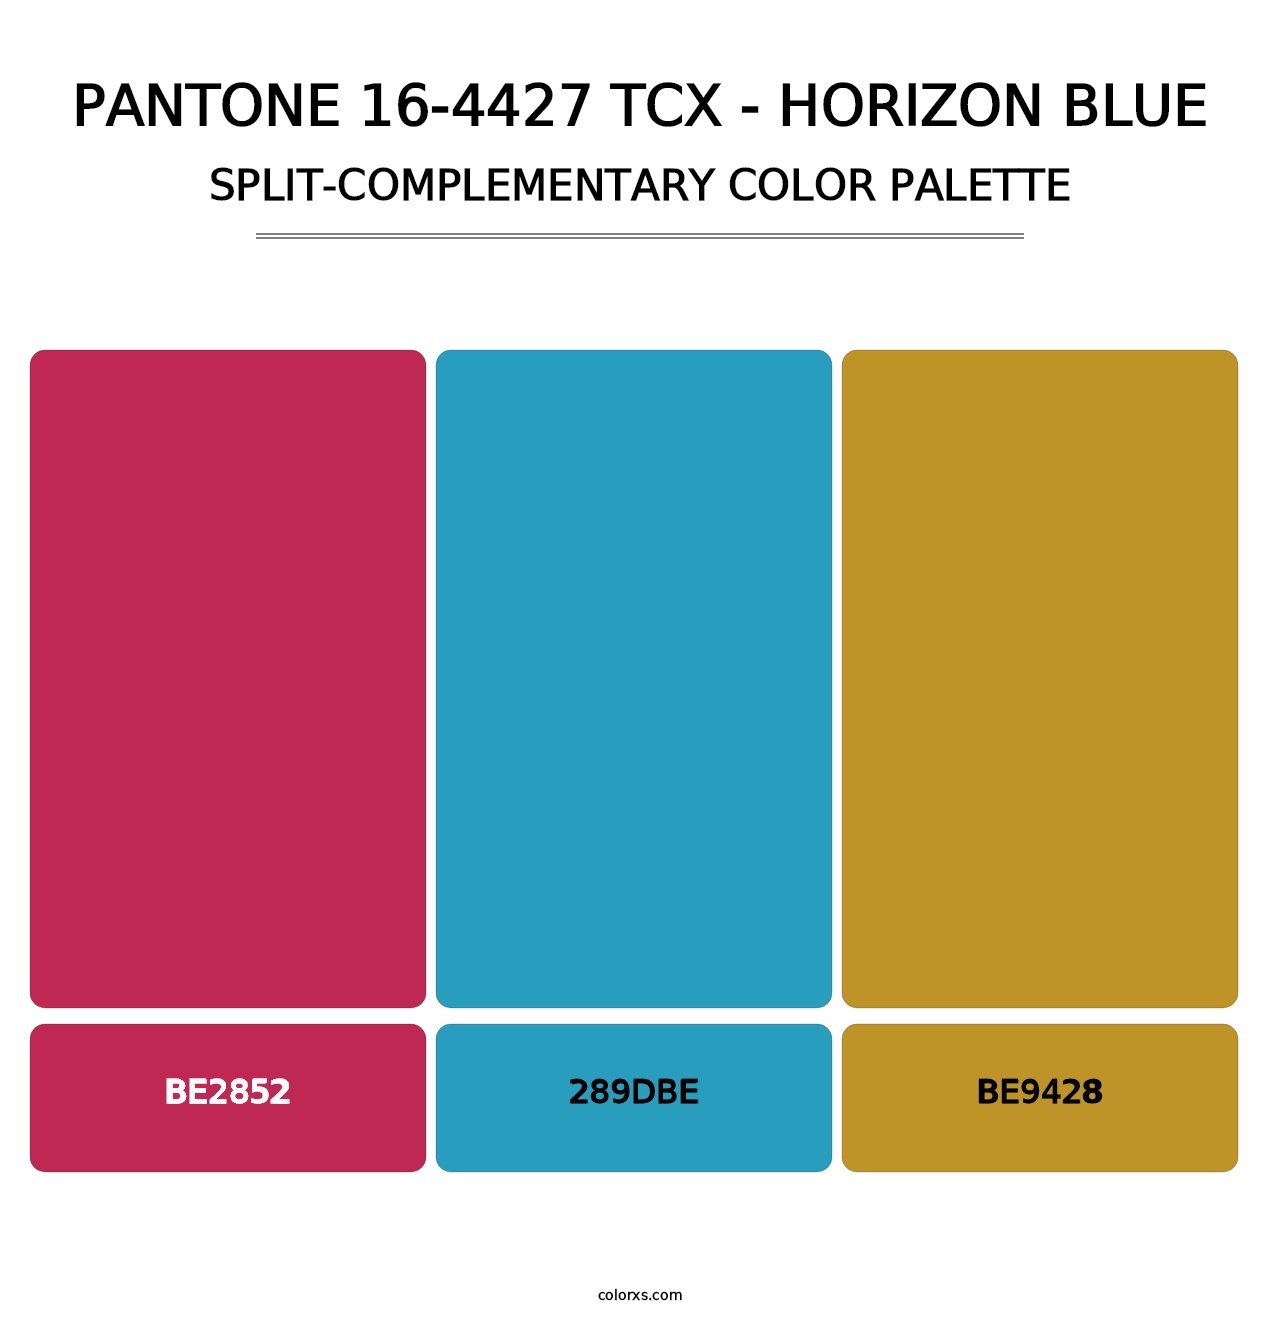 PANTONE 16-4427 TCX - Horizon Blue - Split-Complementary Color Palette